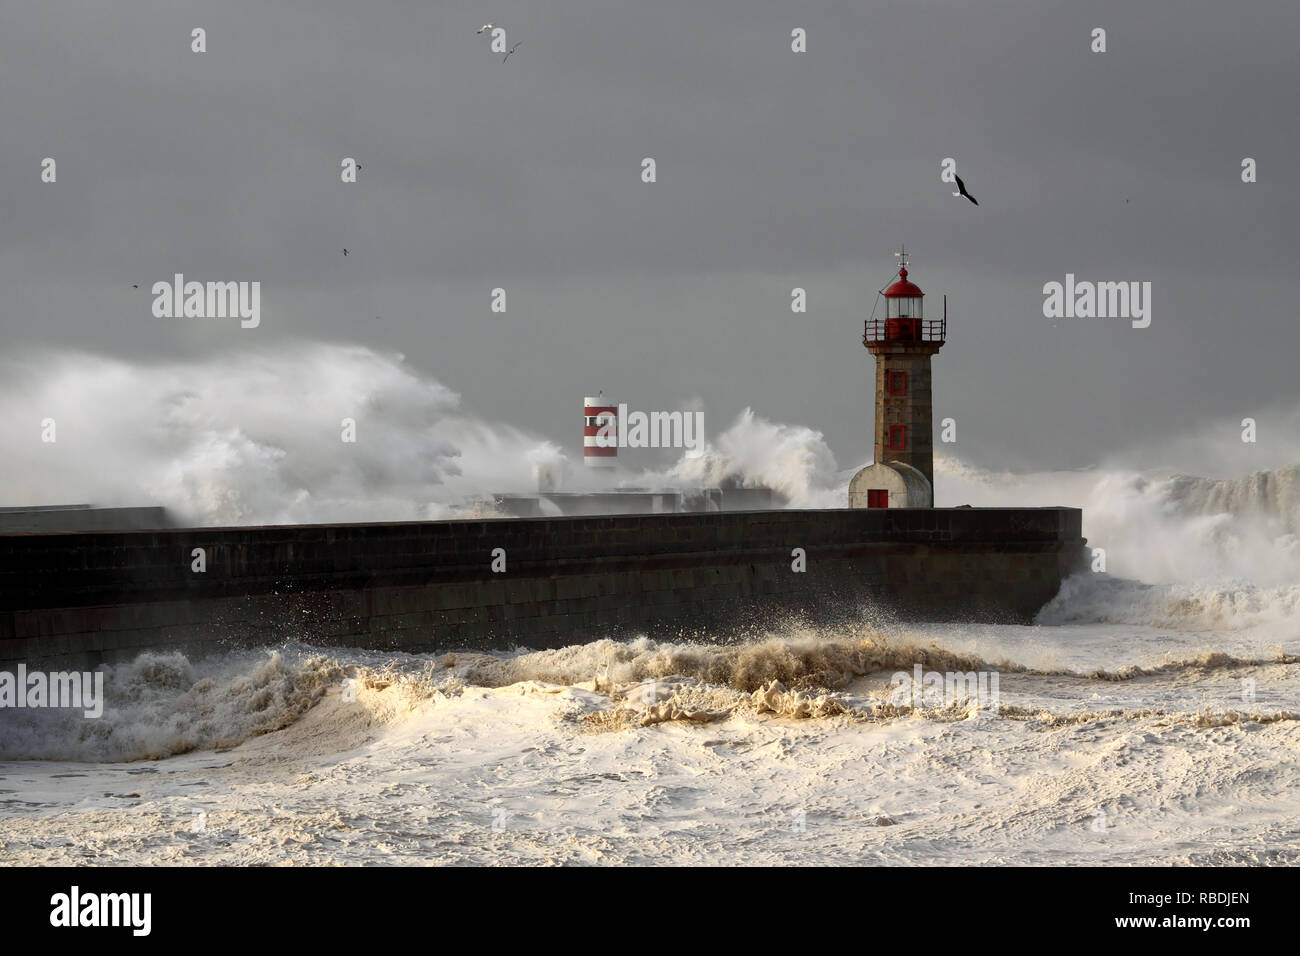 La rivière Douro bouche sur la première grosse tempête de l'année 2013 ; des rafales de vent atteignent 140 km Banque D'Images